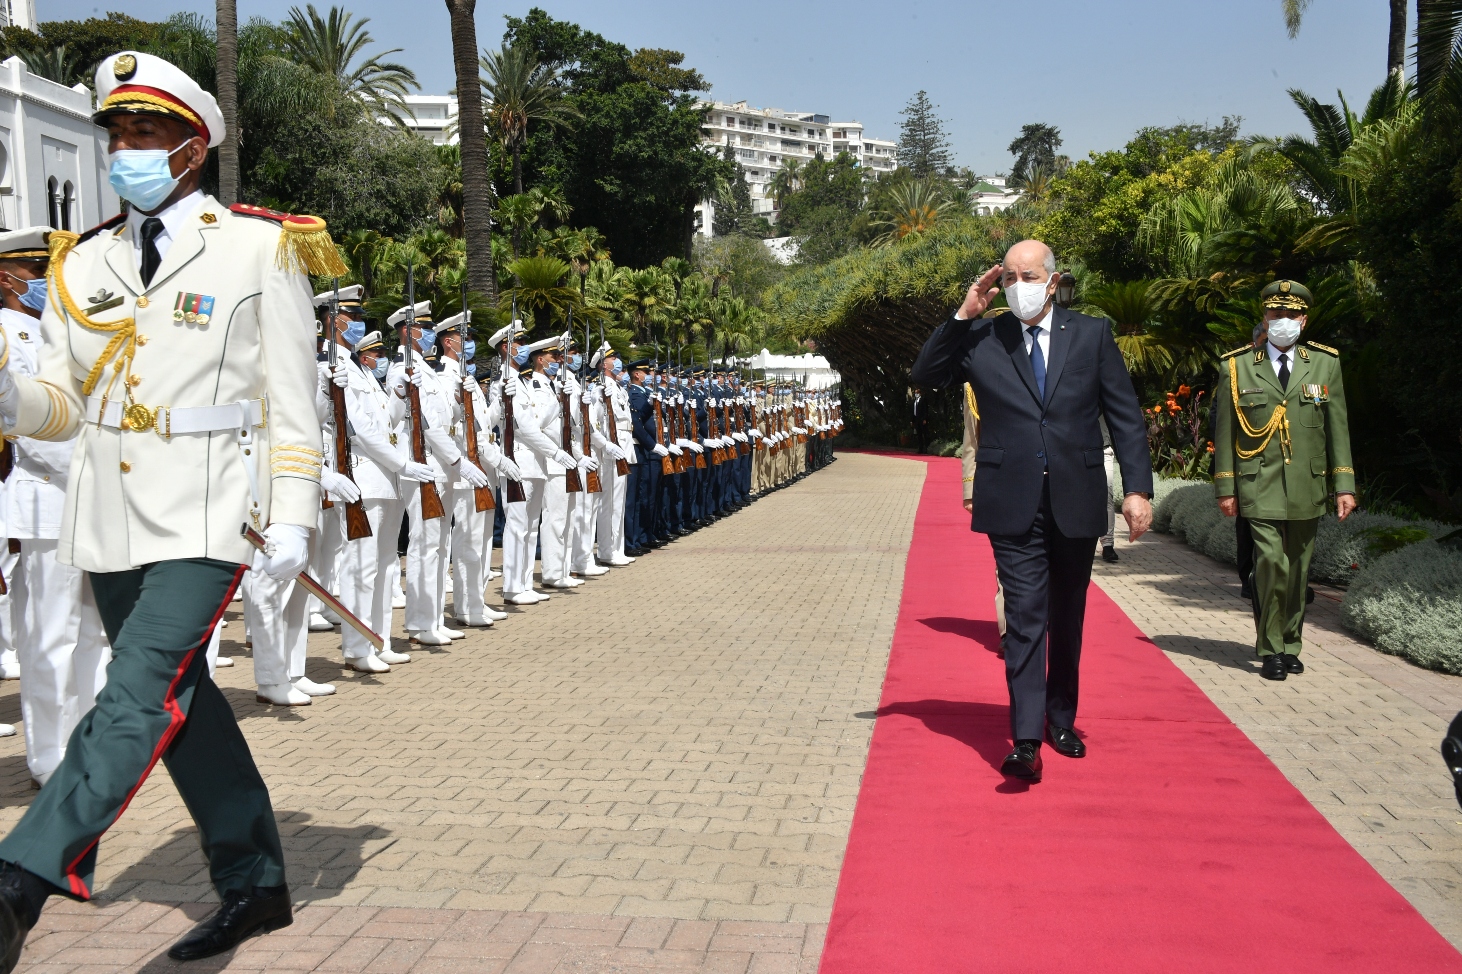 الرئيس الجزائري يعود إلى ألمانيا بسبب تبعات إصابته بكورونا